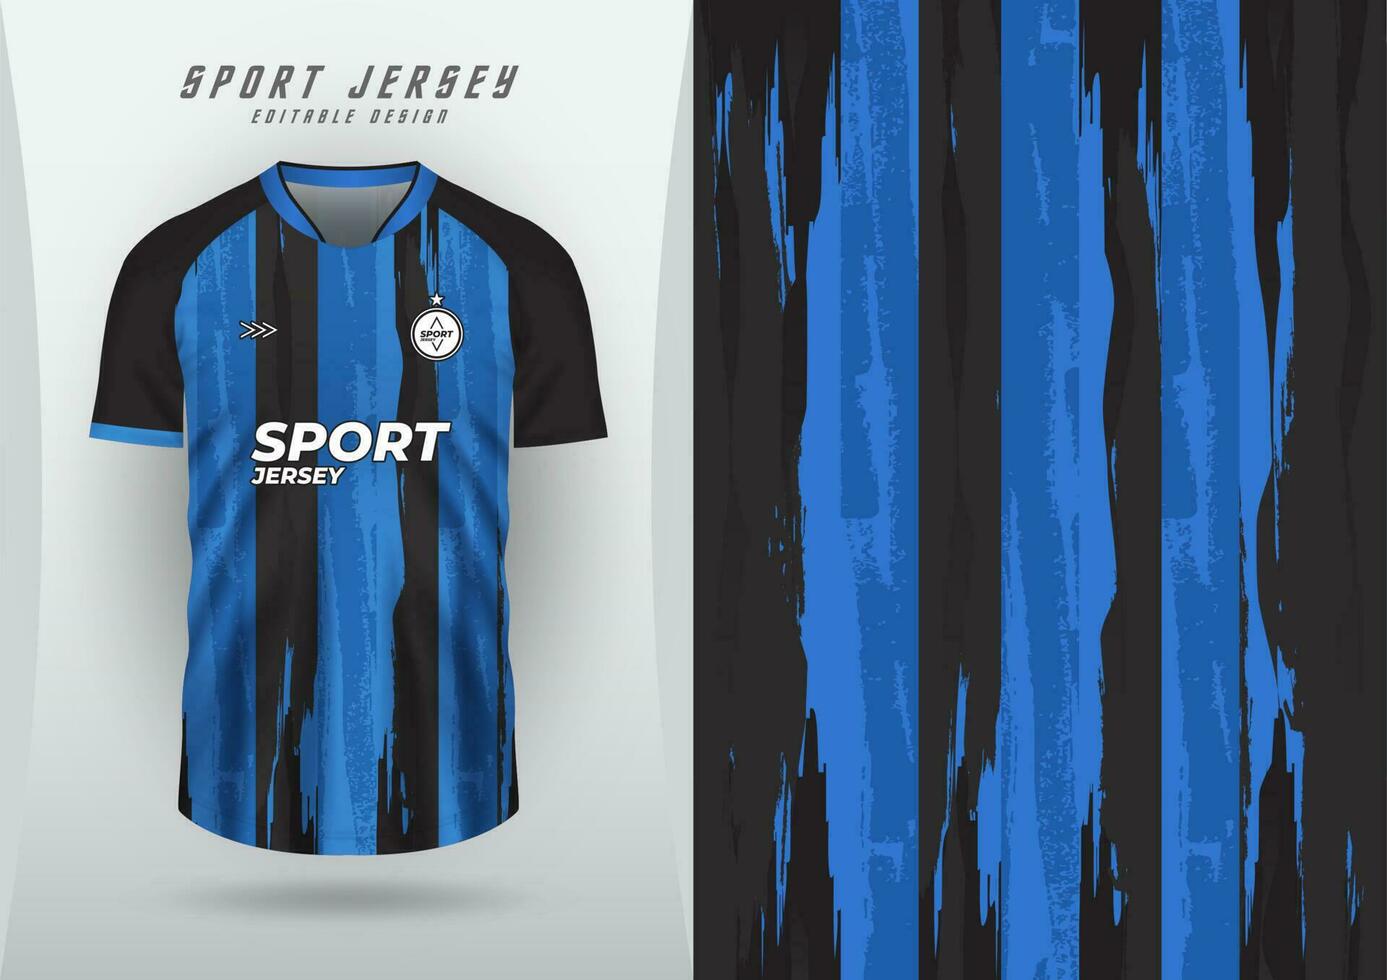 achtergrond voor sport- Jersey voetbal Jersey rennen Jersey racing Jersey patroon streep borstel blauw en zwart vector